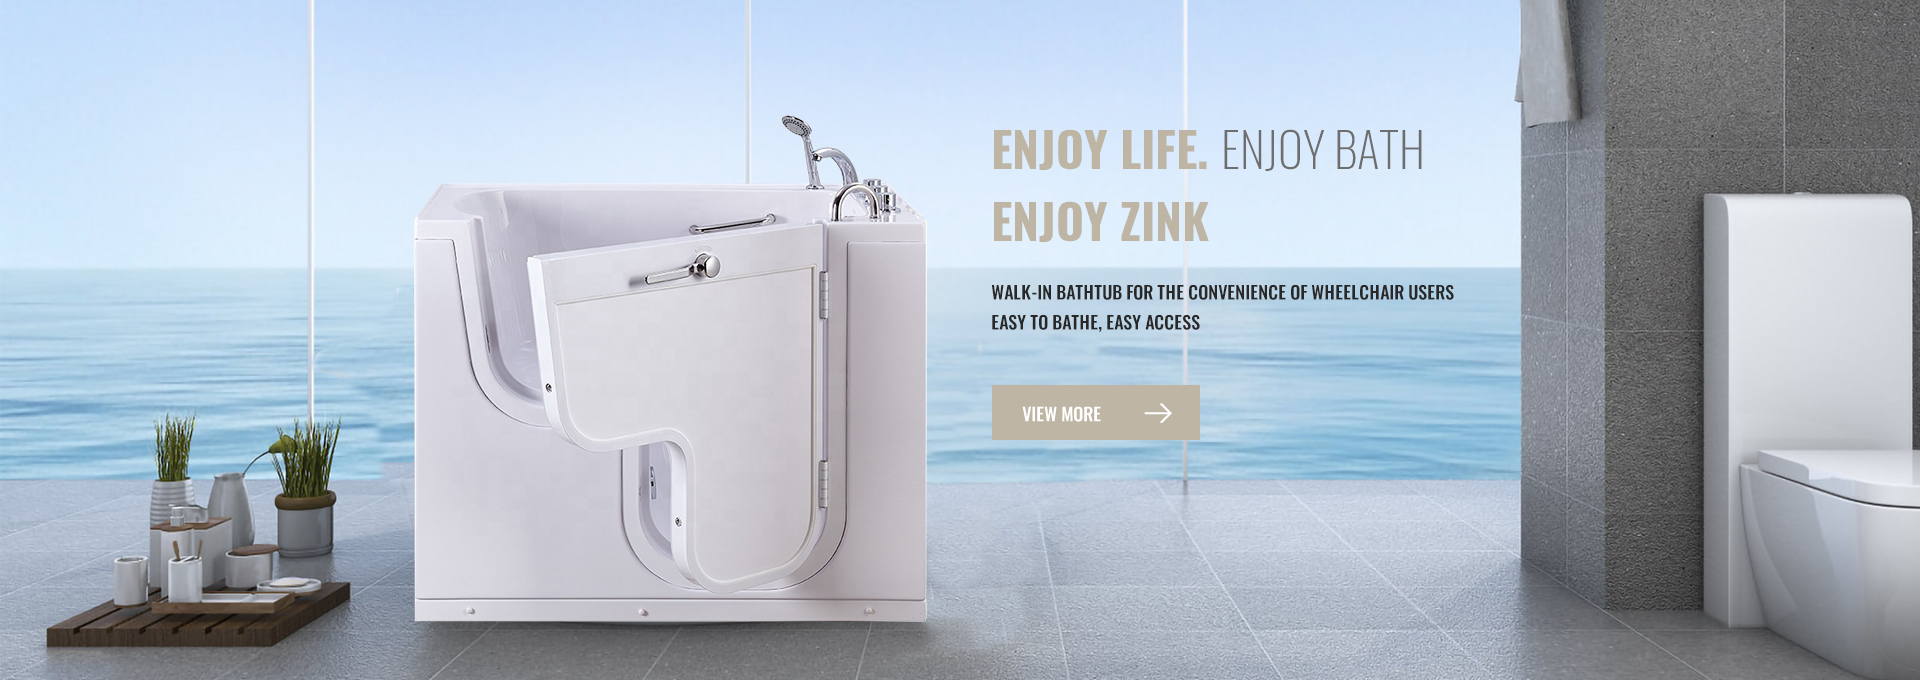 Найдвартай, шинэлэг: Foshan Zink Sanitary Ware Co., Ltd. - Чанартай ванны болон бусад зүйлсийн найдвартай түнш